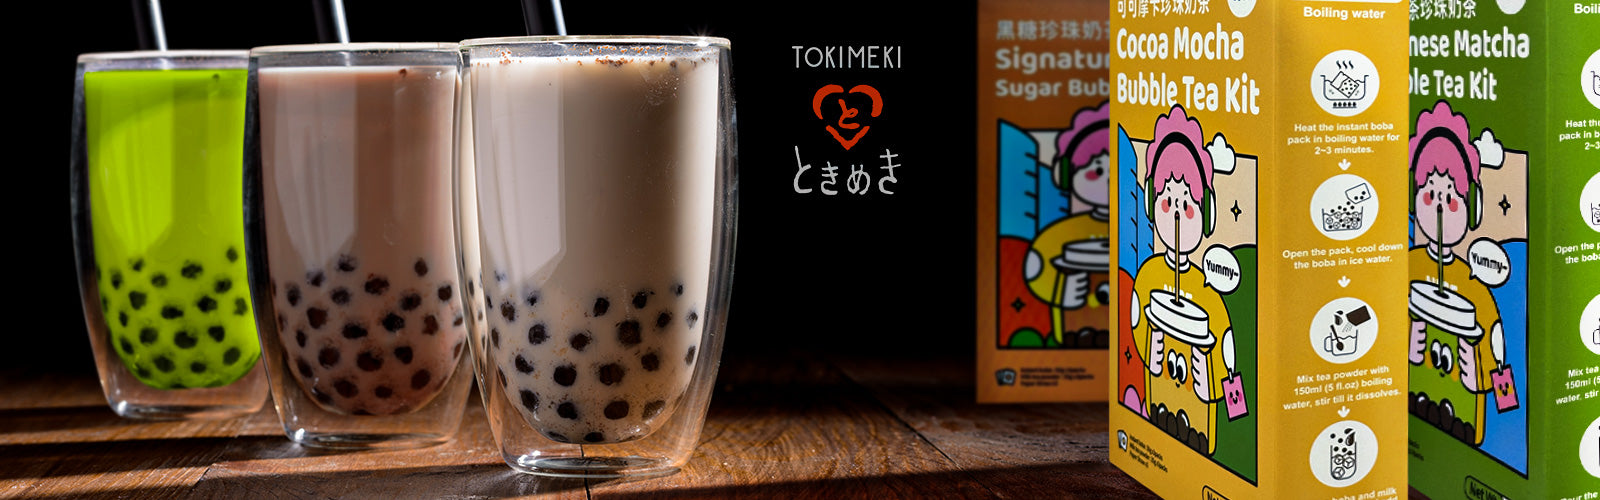 Tokimeki Bubble Milk Tea pc banner